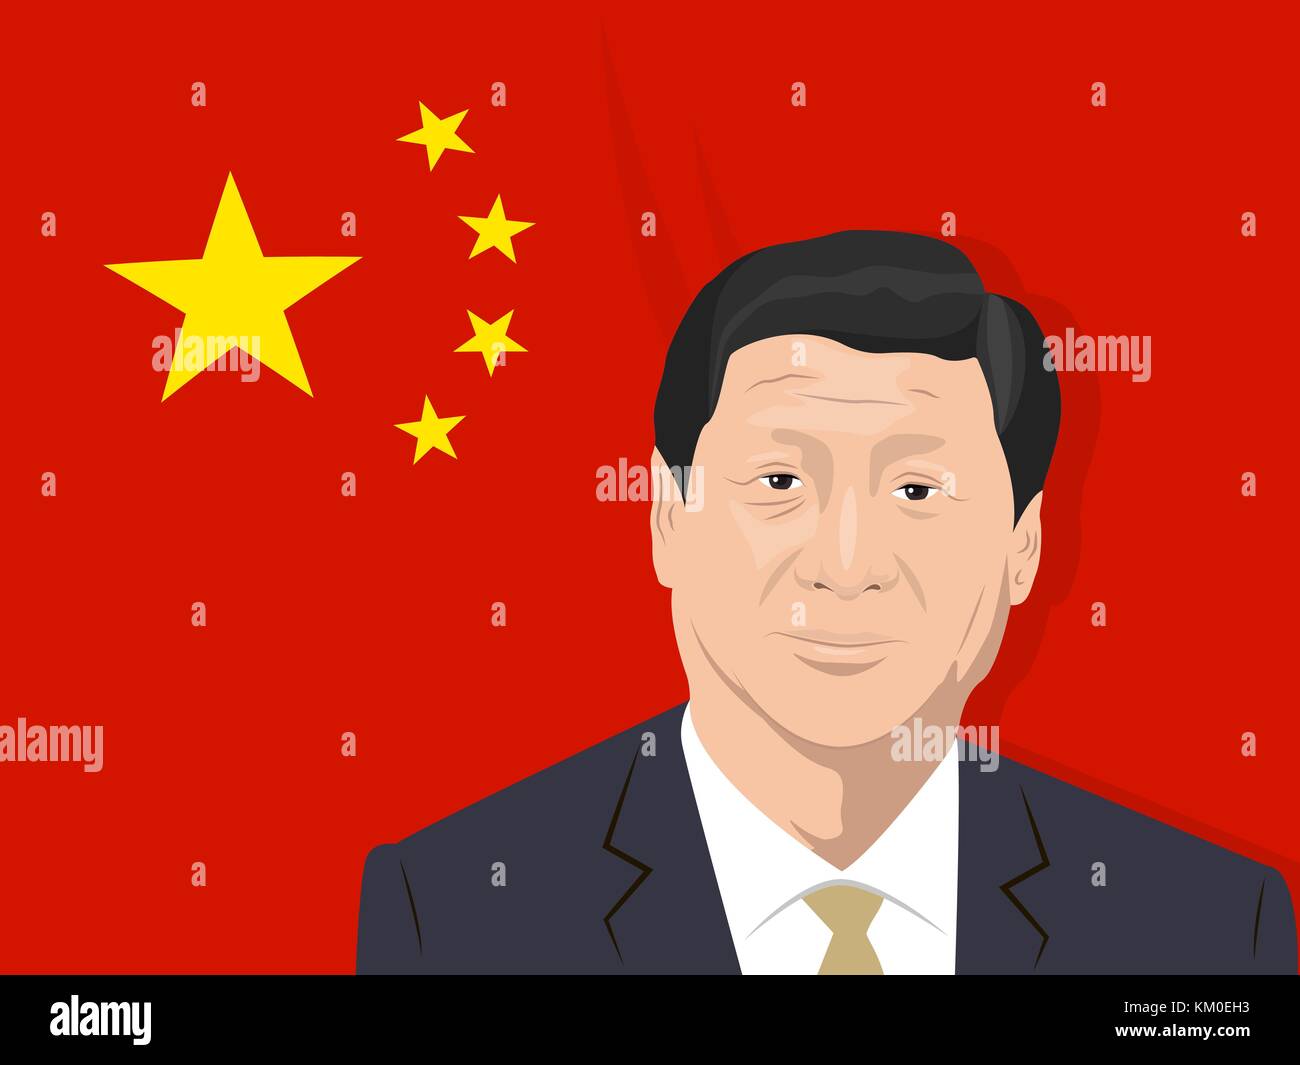 02.12.2017 Redaktionelle Illustration von Xi Jinping - Generalsekretär der Kommunistischen Partei Chinas, der Präsident der Volksrepublik chin Stock Vektor